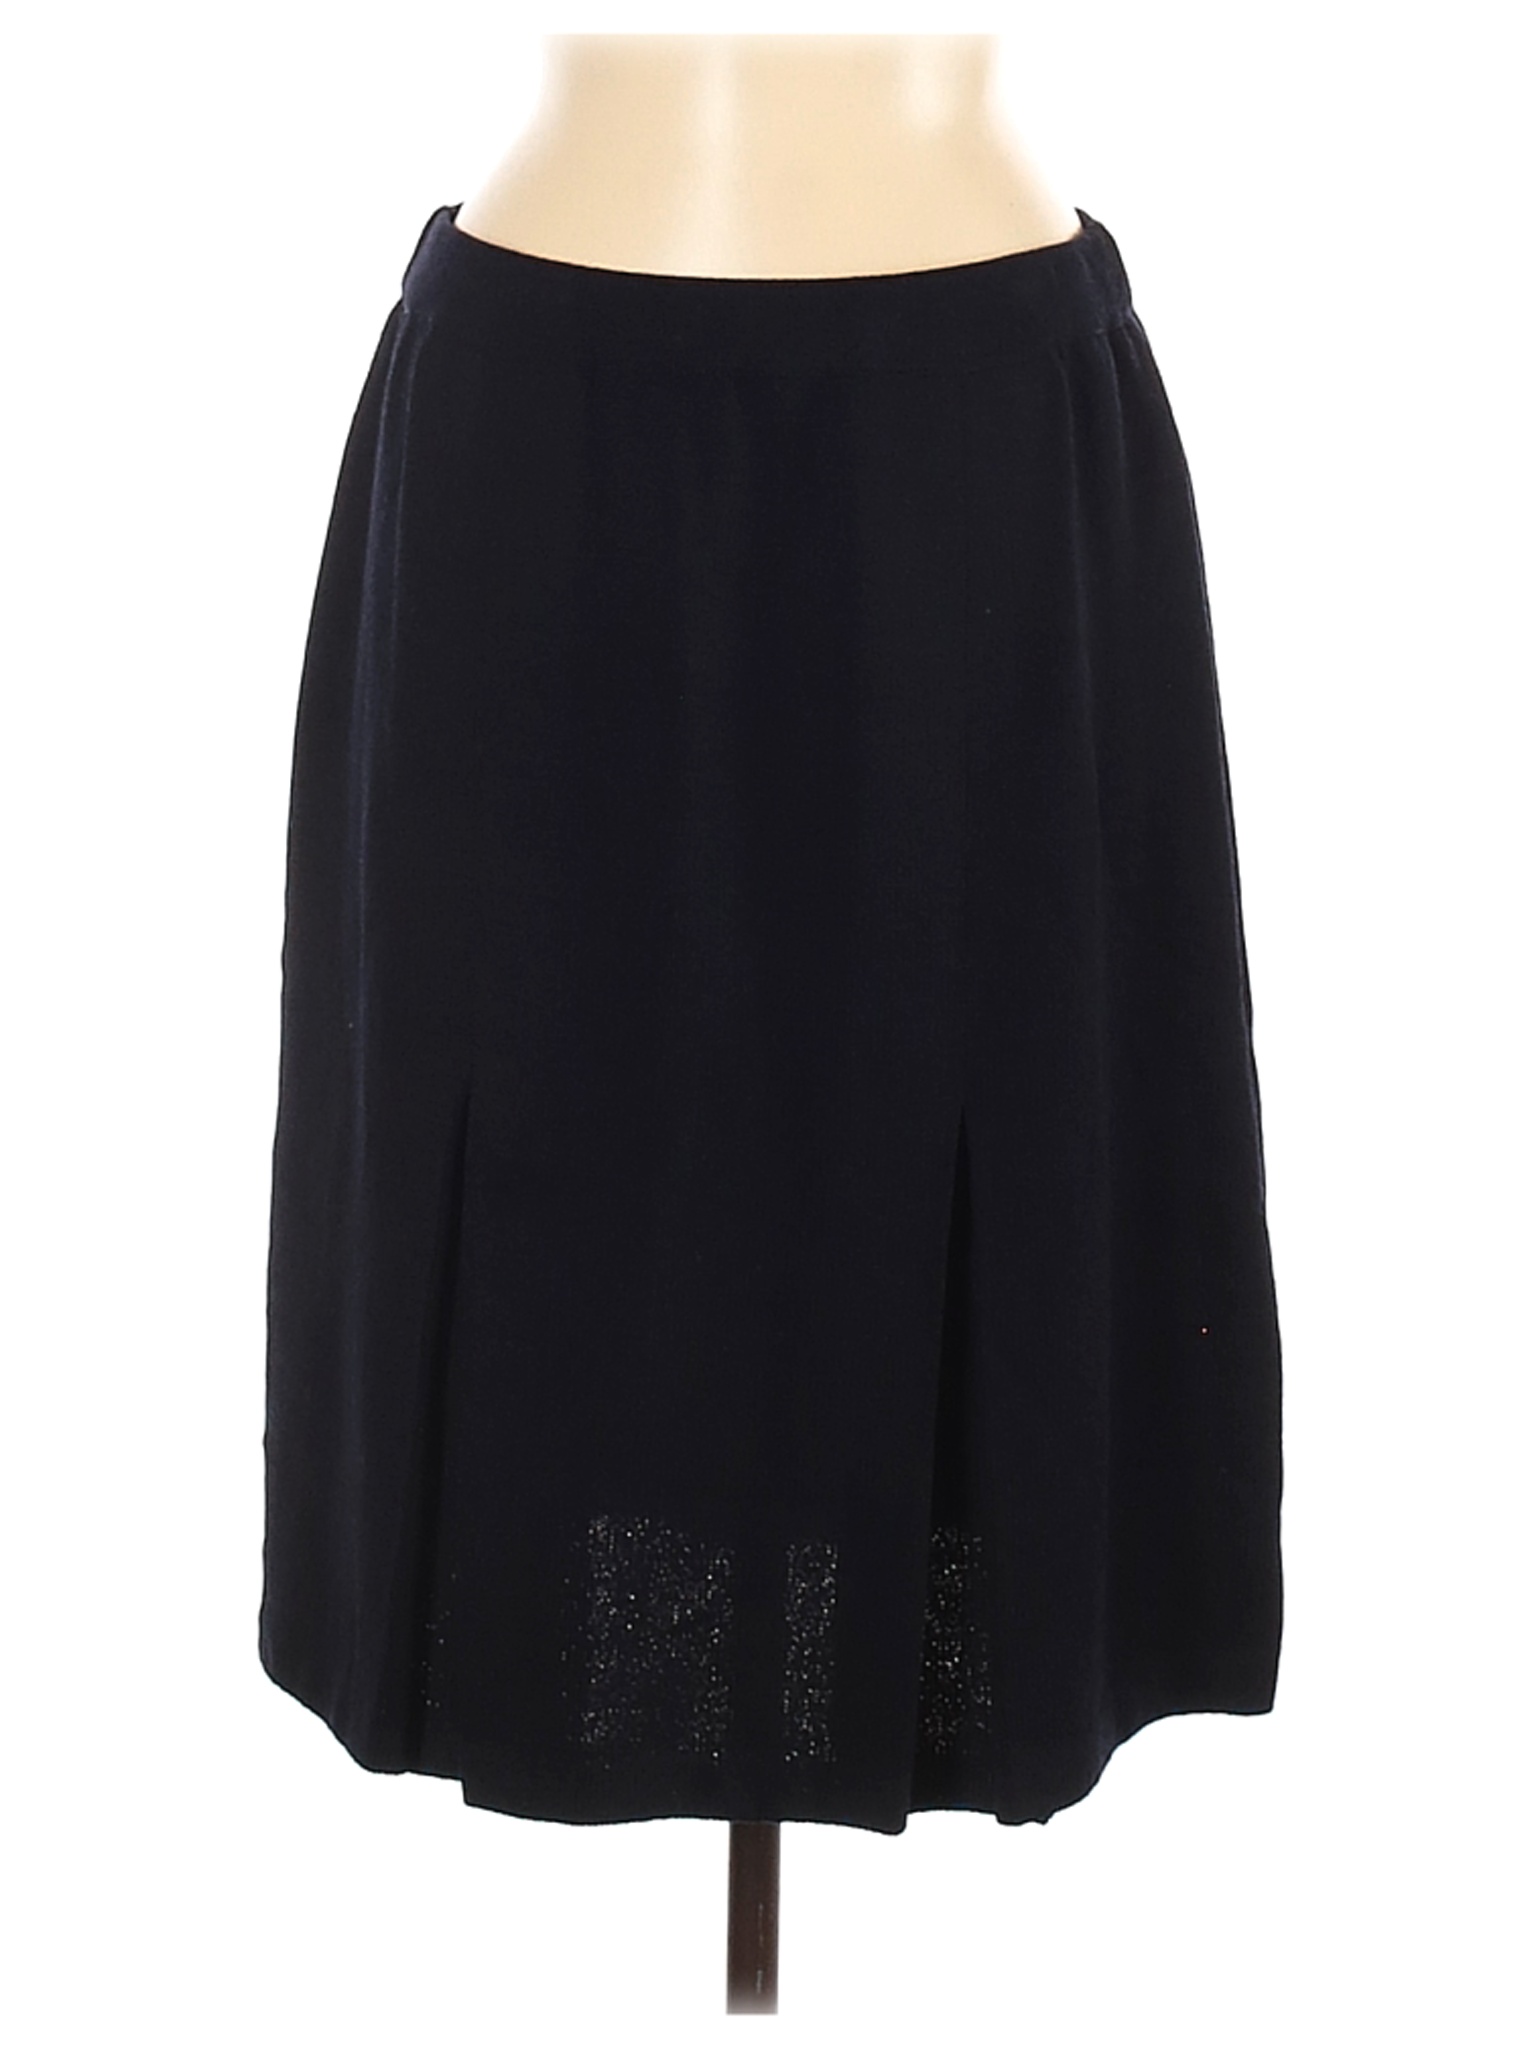 St. John Women Black Casual Skirt 12 | eBay